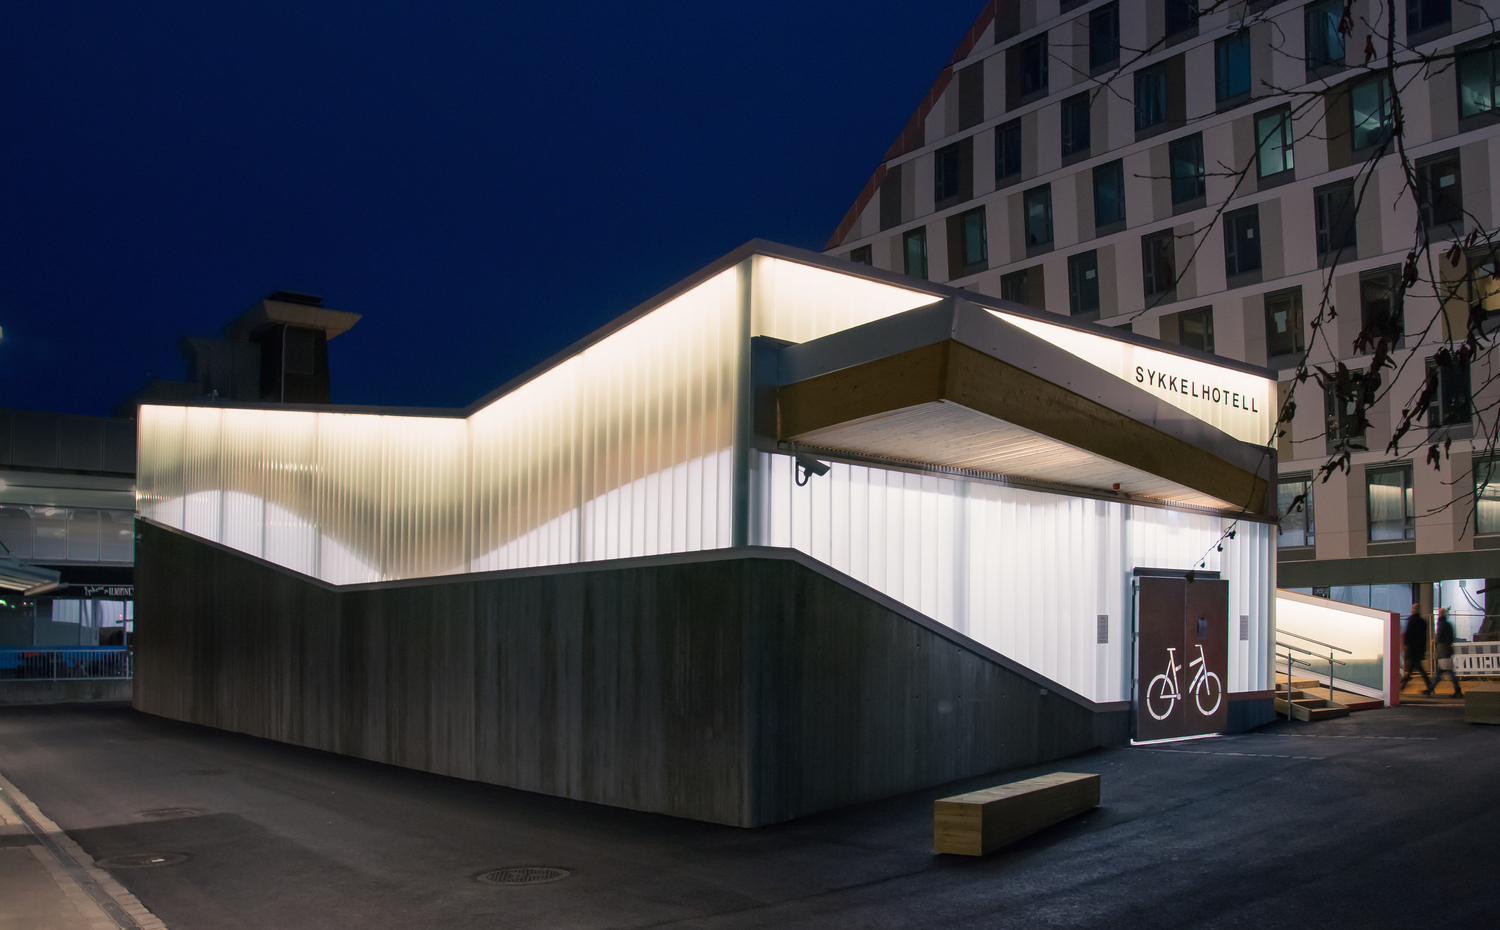 sykkelhotell-2. El proyecto es extender estos hoteles a las principales estaciones de tren de Noruega